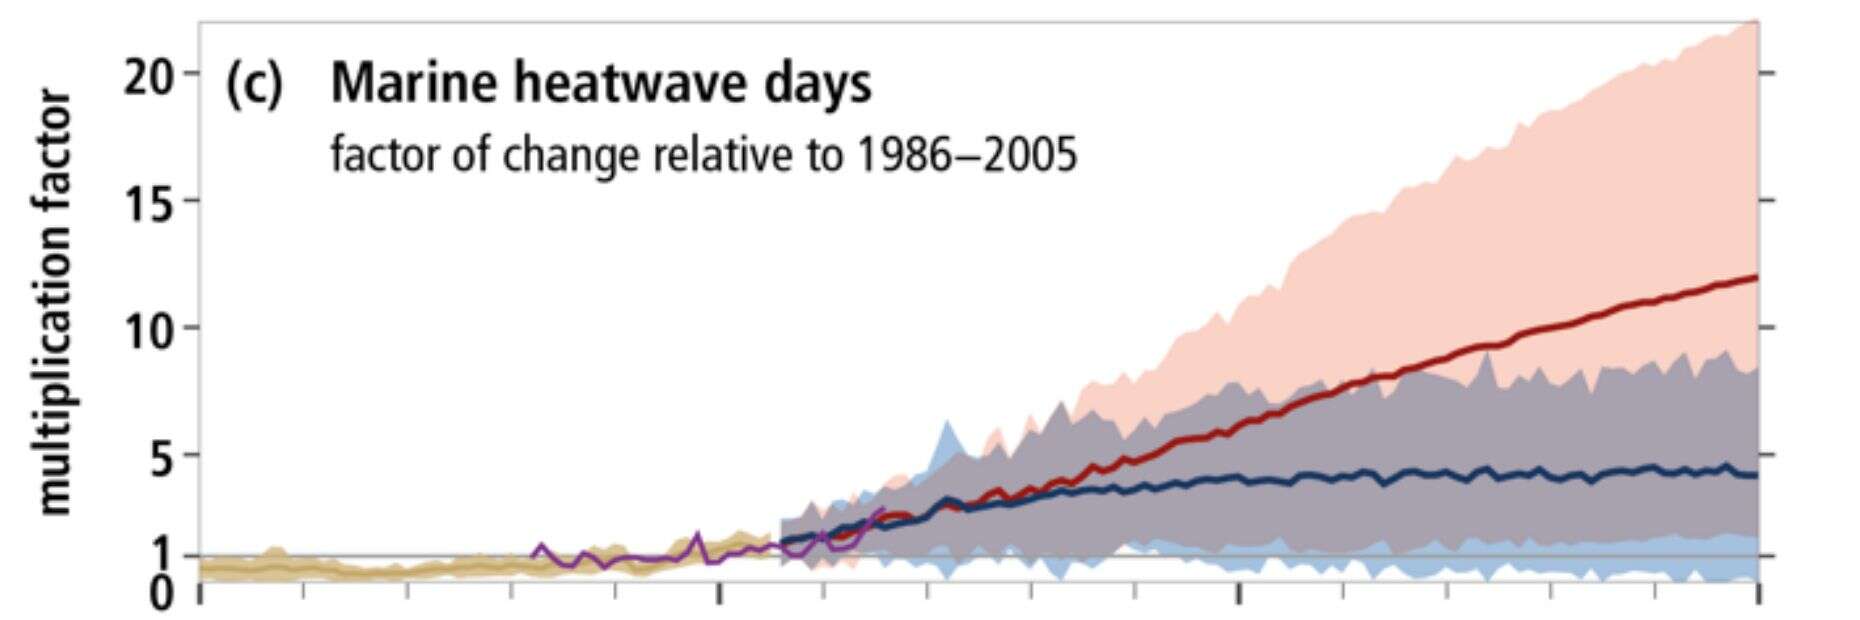 Le nombre de jours de canicules marines, de 1950 à 2100. En rouge, la courbe dans le pire scénario possible. En bleu, la courbe si nous réussissons à réduire nos émissions de CO2 pour rester sous les 2°C.